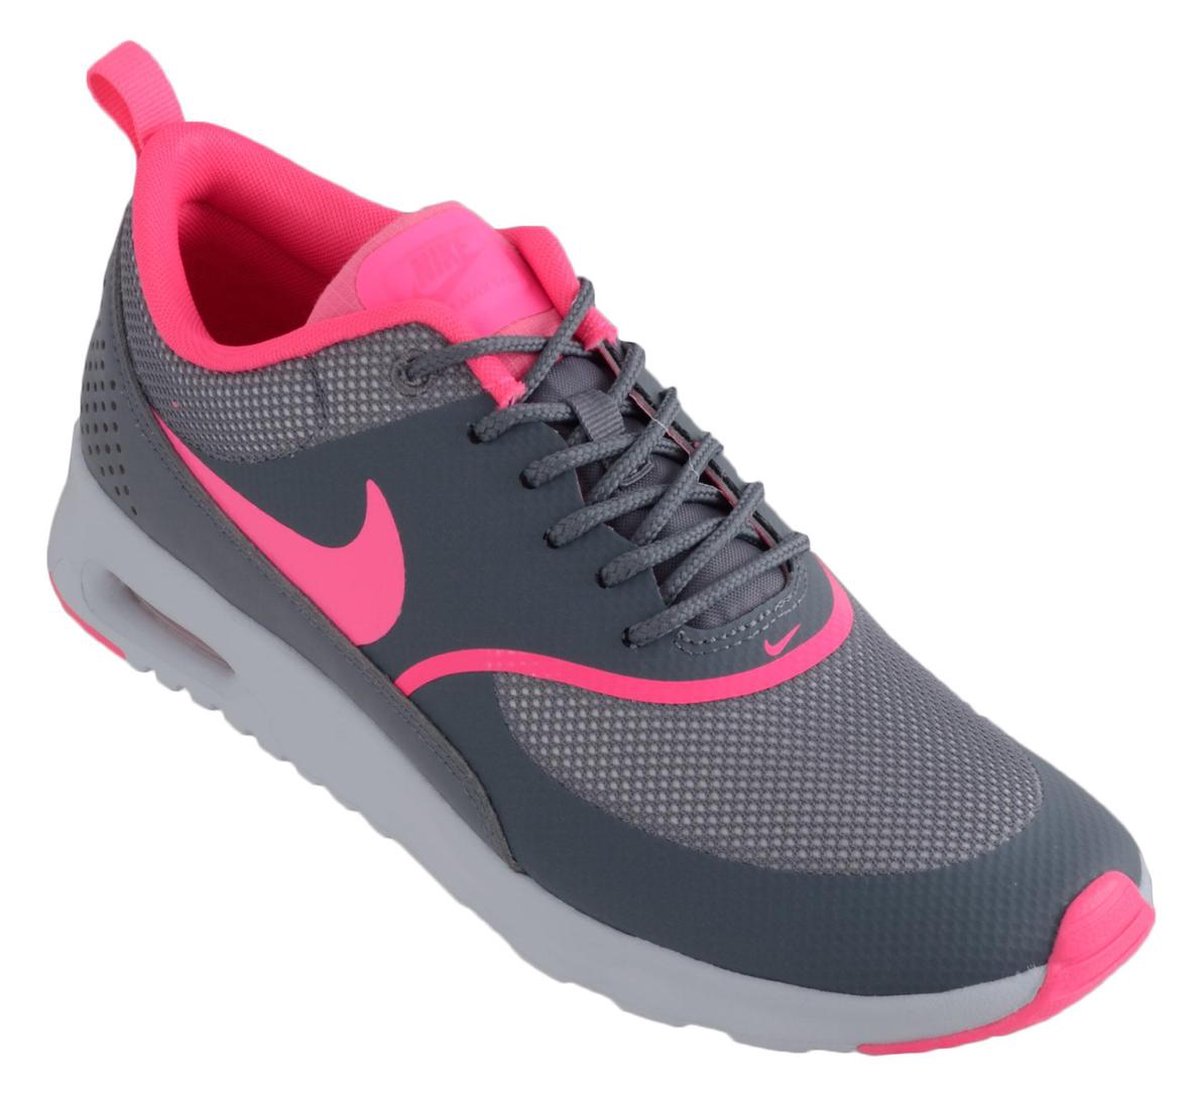 Vervagen vork sla Nike Air Max Thea - Sneakers - Vrouwen - Maat 42 - grijs/roze | bol.com